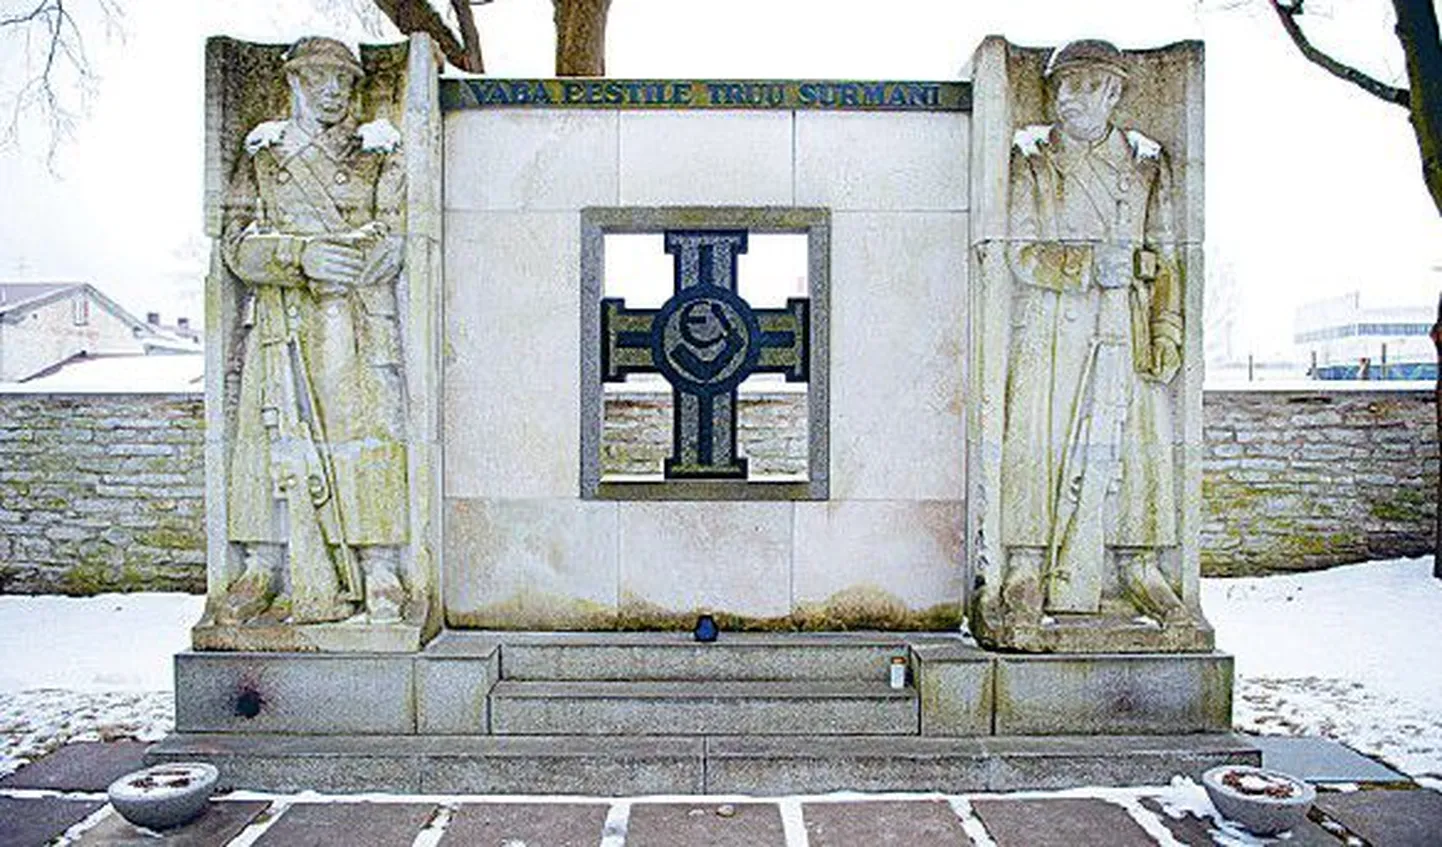 Vabadusristi kavaleride mälestussamba keskel olev graniitrist oligi 33 aastat Meriväljal peidus.